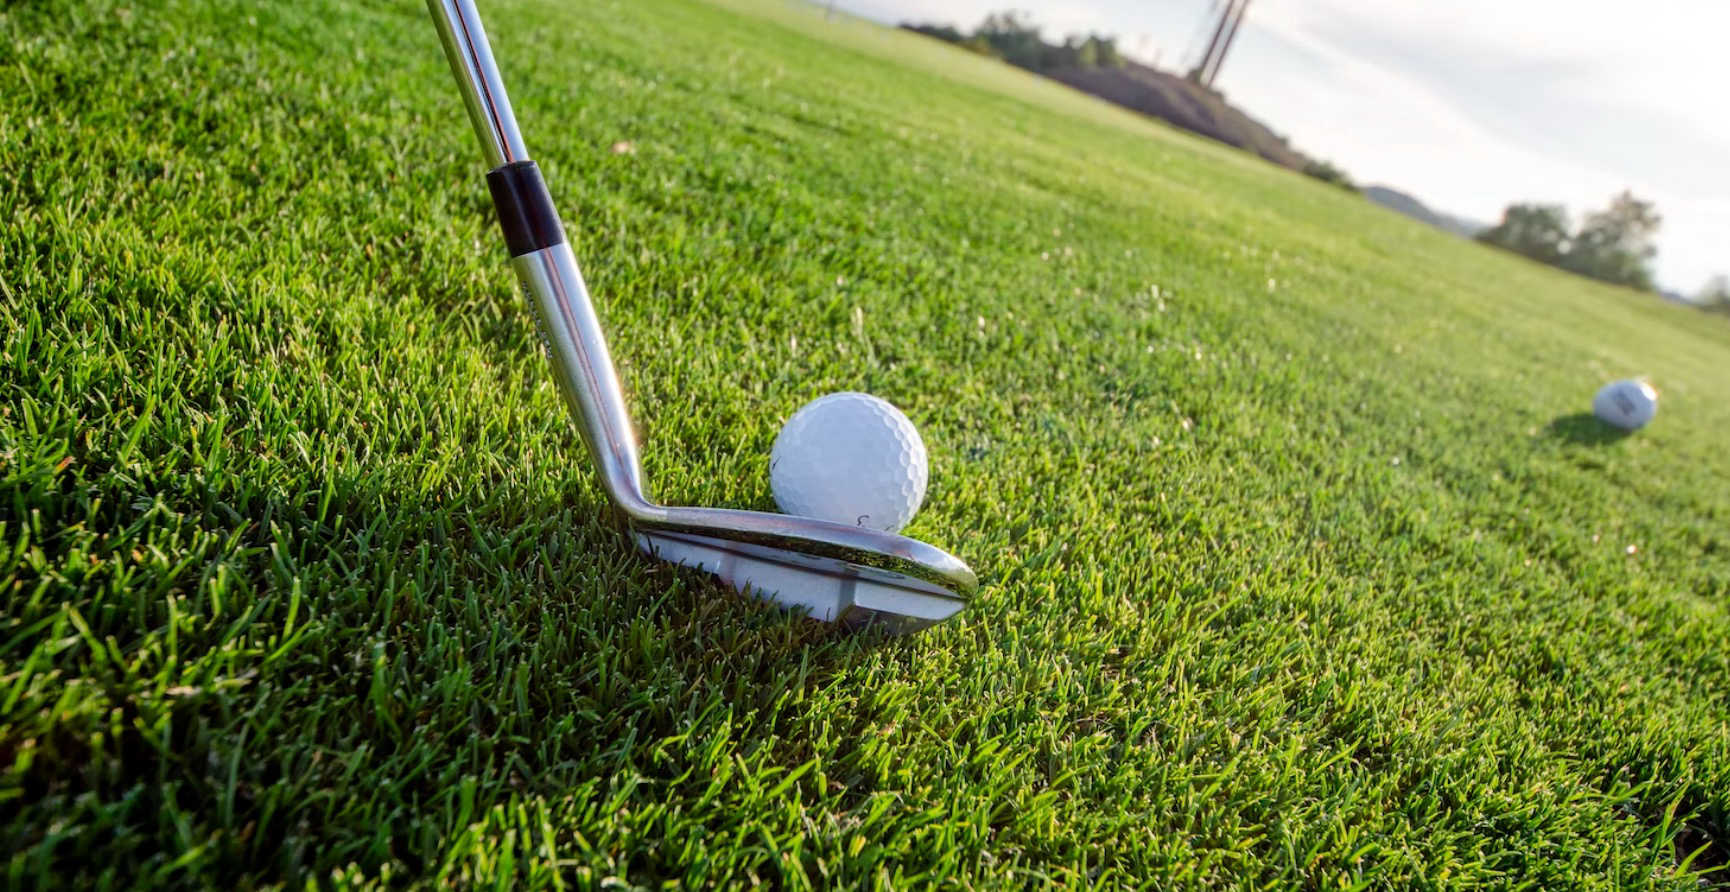 Comment choisir le meilleur équipement de golf : clubs, balles et